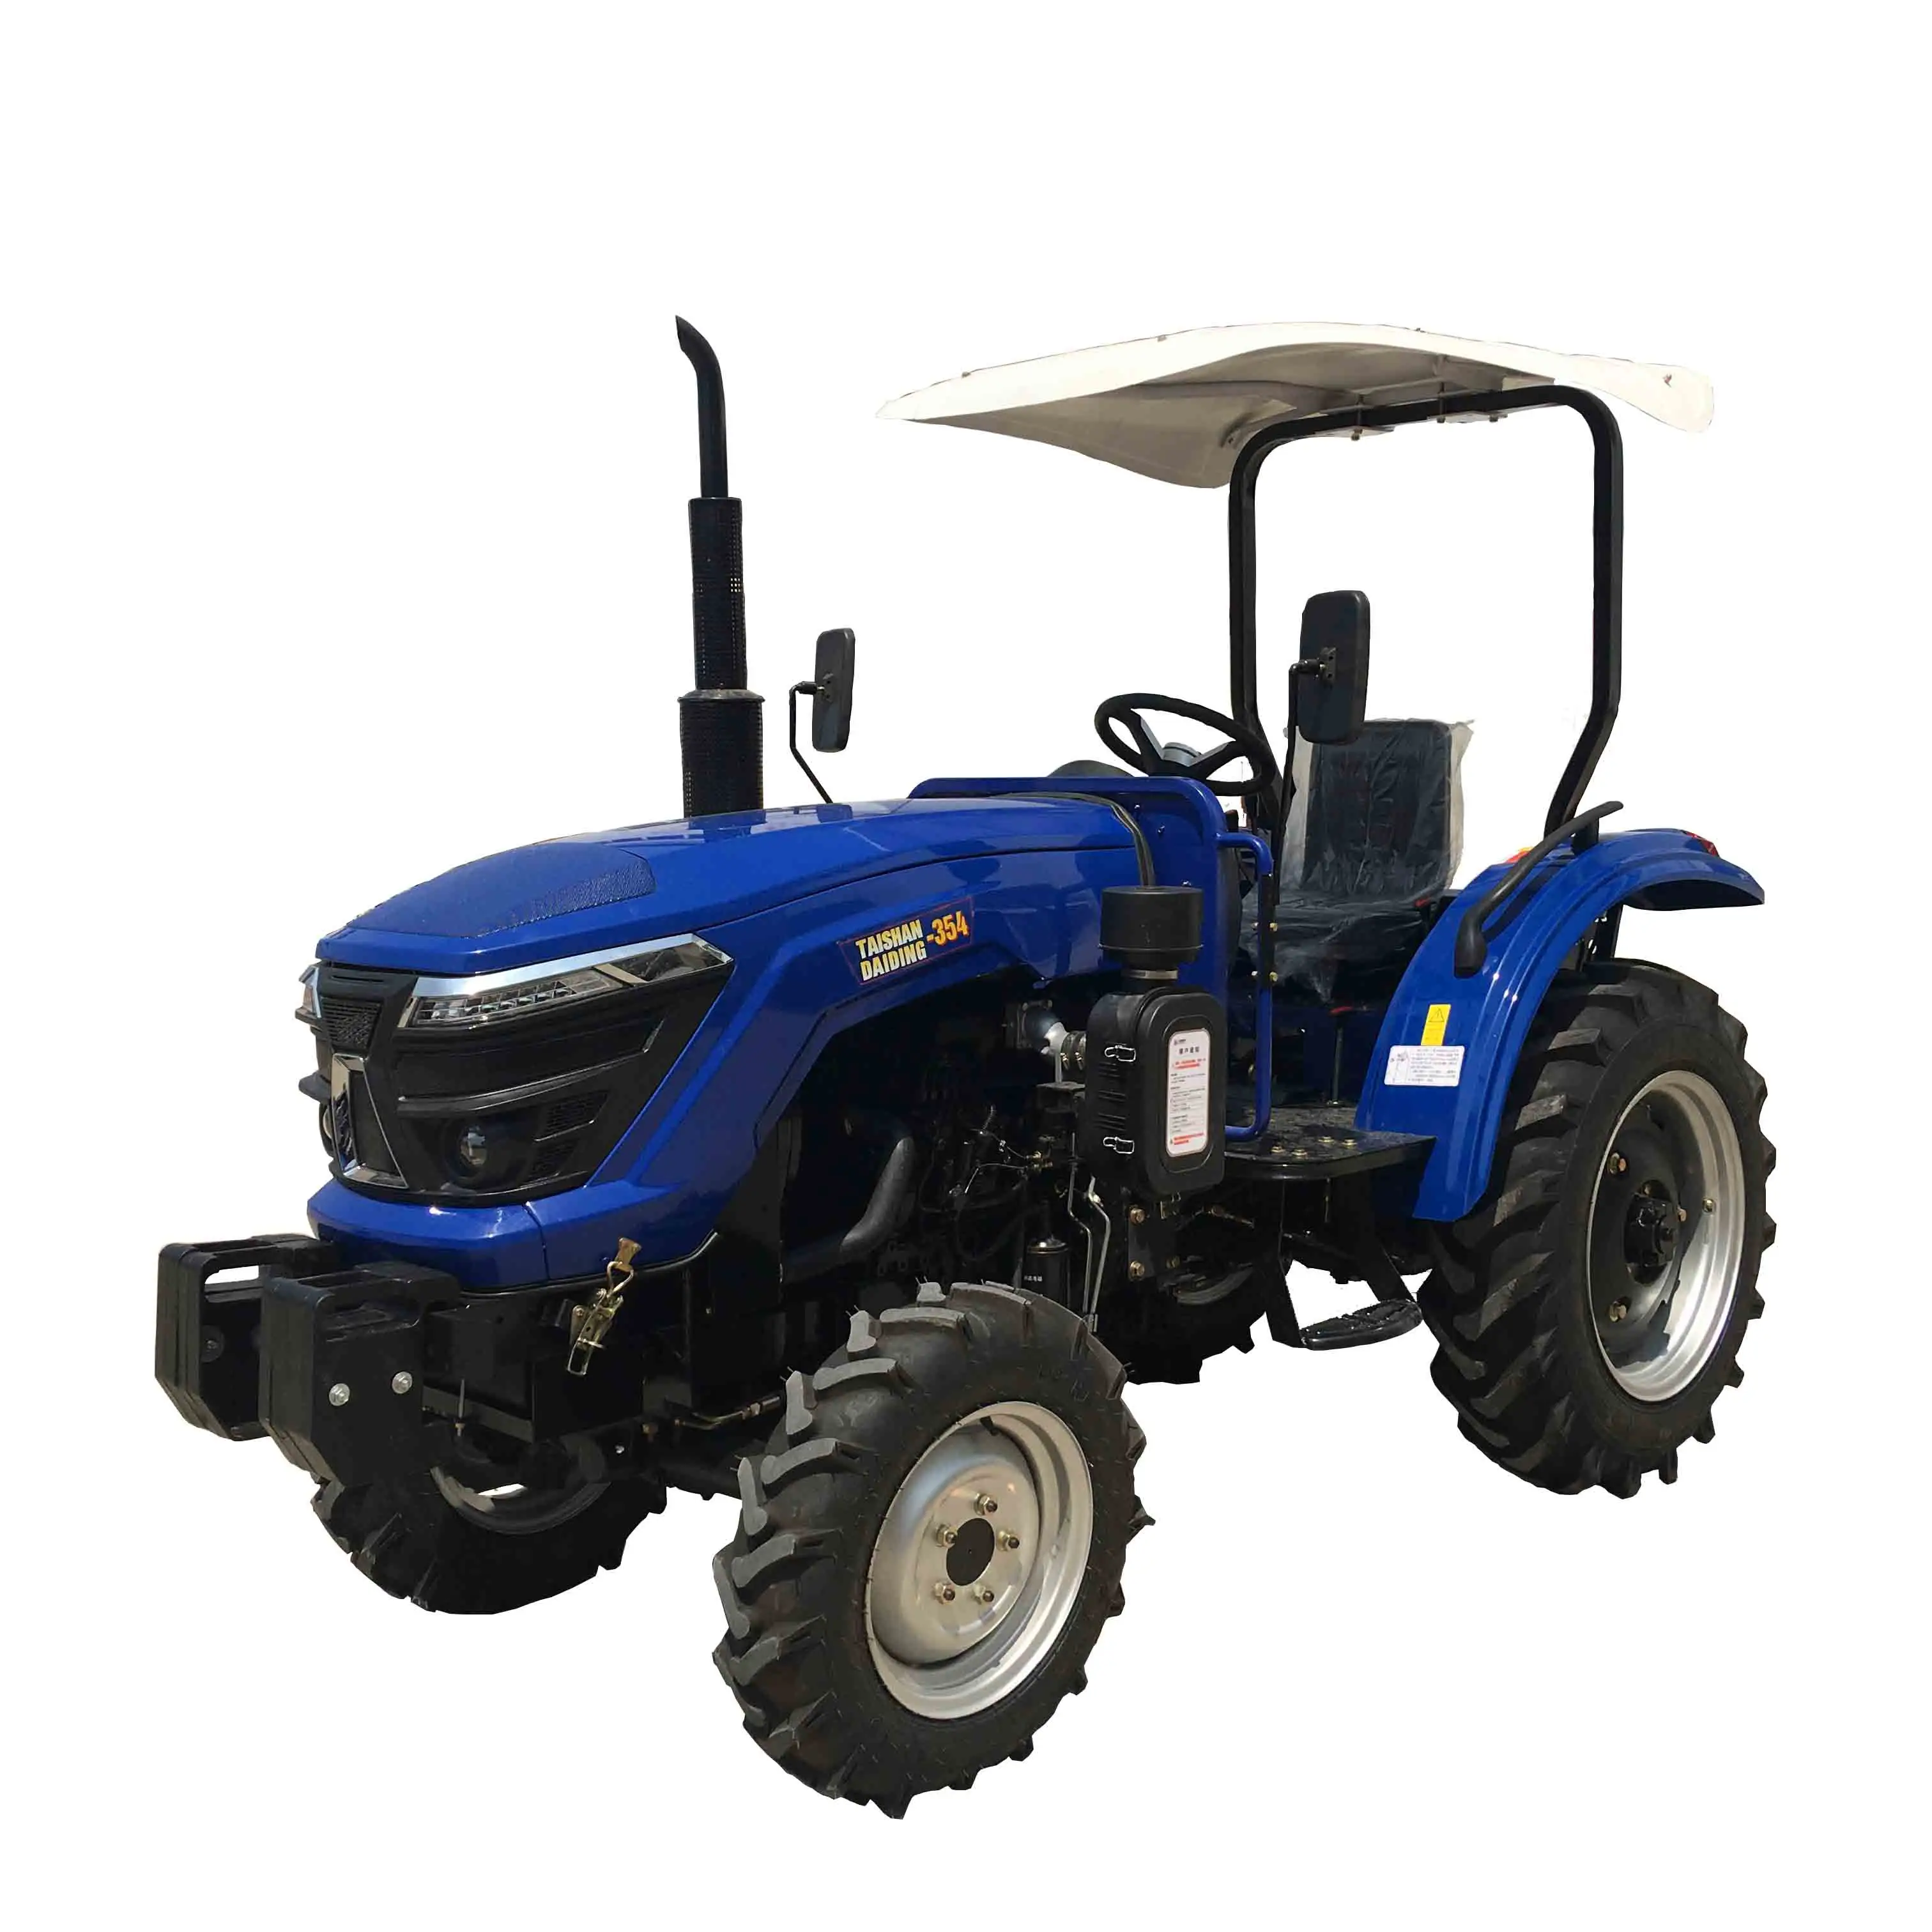 Beli traktor Daiding traktor Mini 354 4wd 35 hp 4x4 pertanian traktor sama alat lengkap untuk dijual